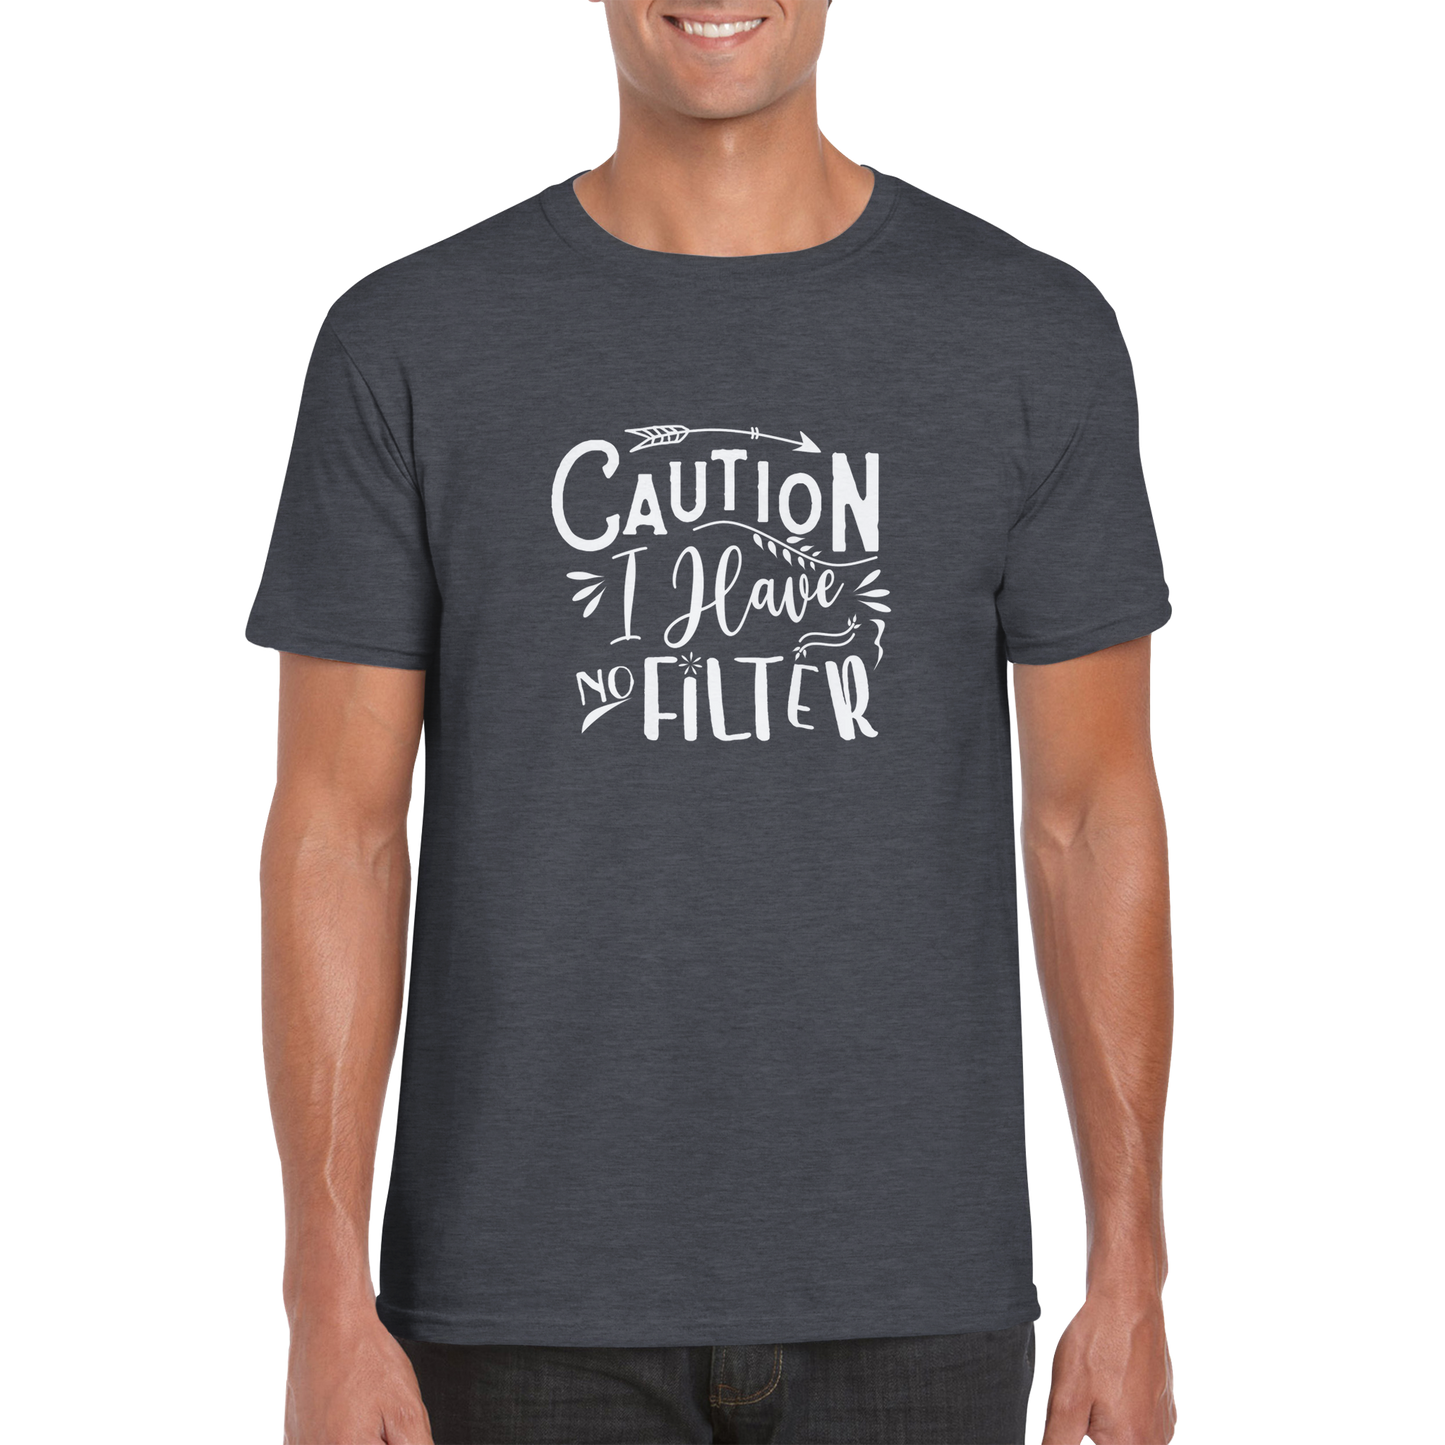 No Filter Sarcasm Shirt - Classic Unisex Crewneck T-shirt